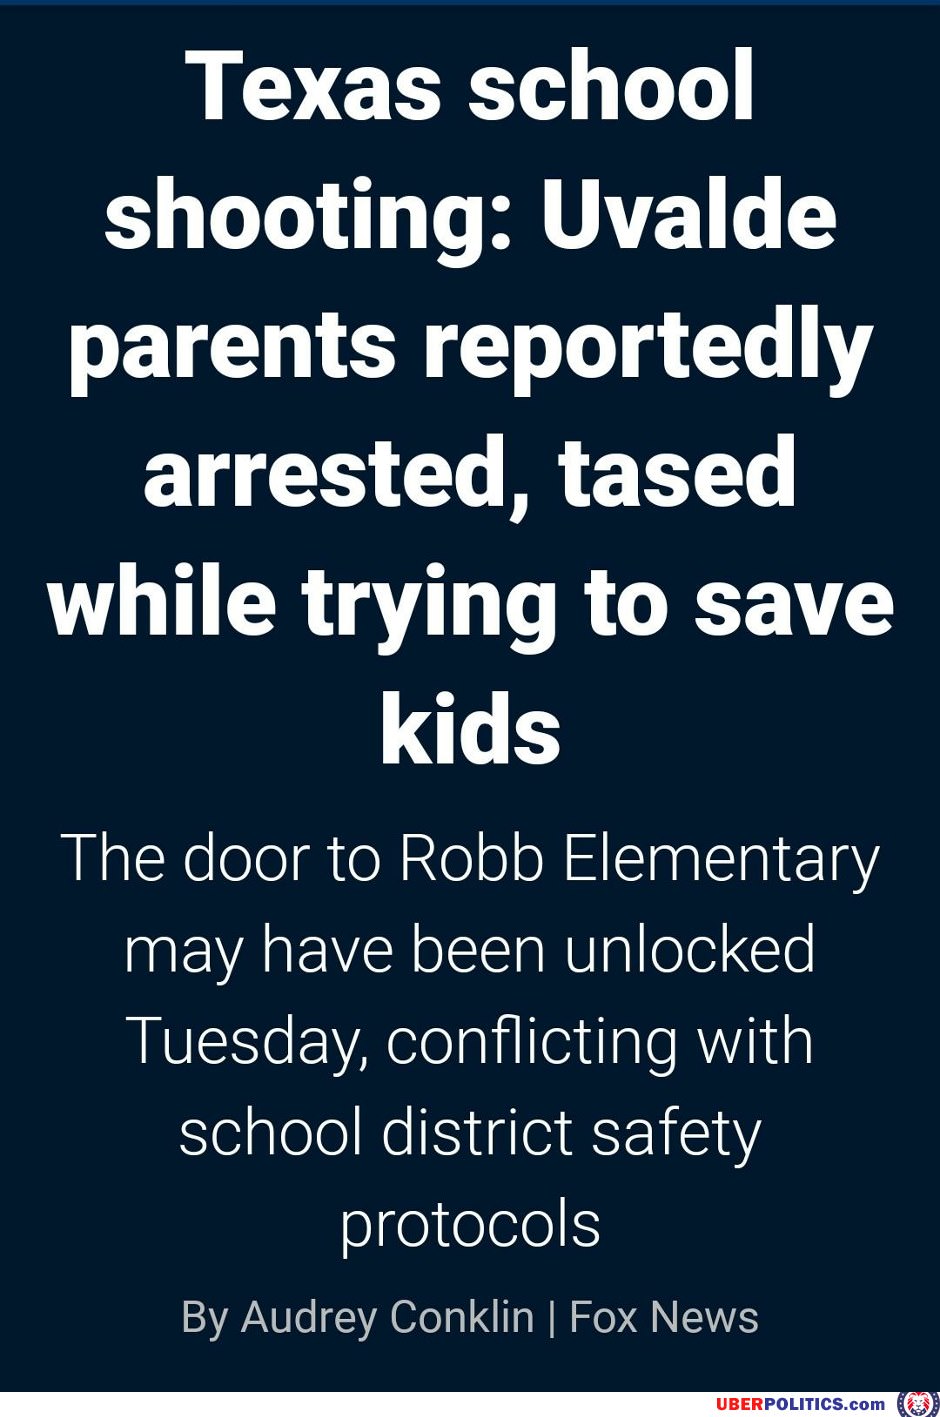 No Saving Kids